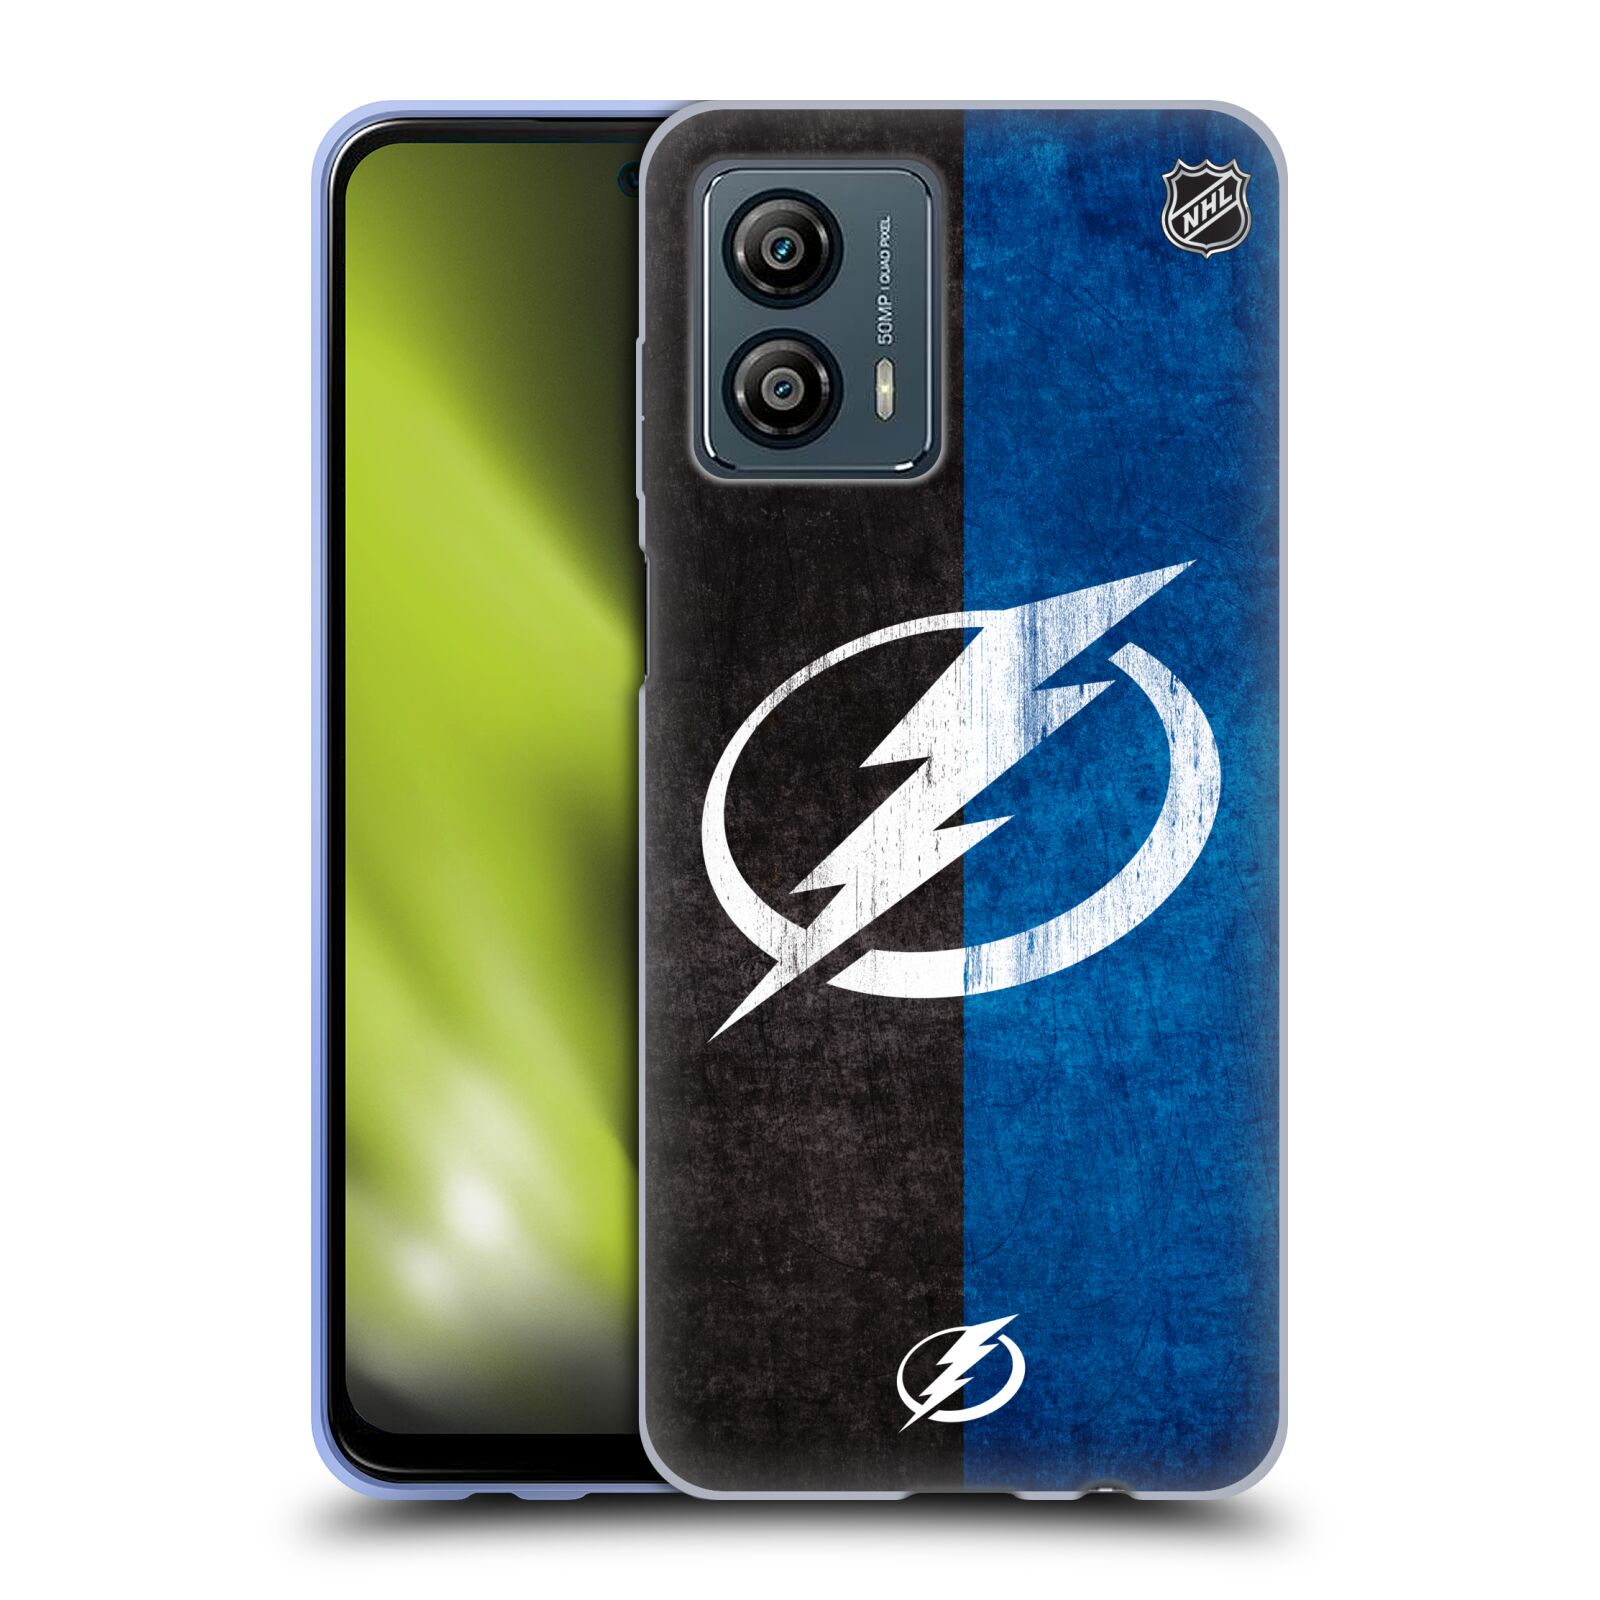 Silikonové pouzdro na mobil Motorola Moto G53 5G - NHL - Půlené logo Tampa Bay Lightning (Silikonový kryt, obal, pouzdro na mobilní telefon Motorola Moto G53 5G s licencovaným motivem NHL - Půlené logo Tampa Bay Lightning)